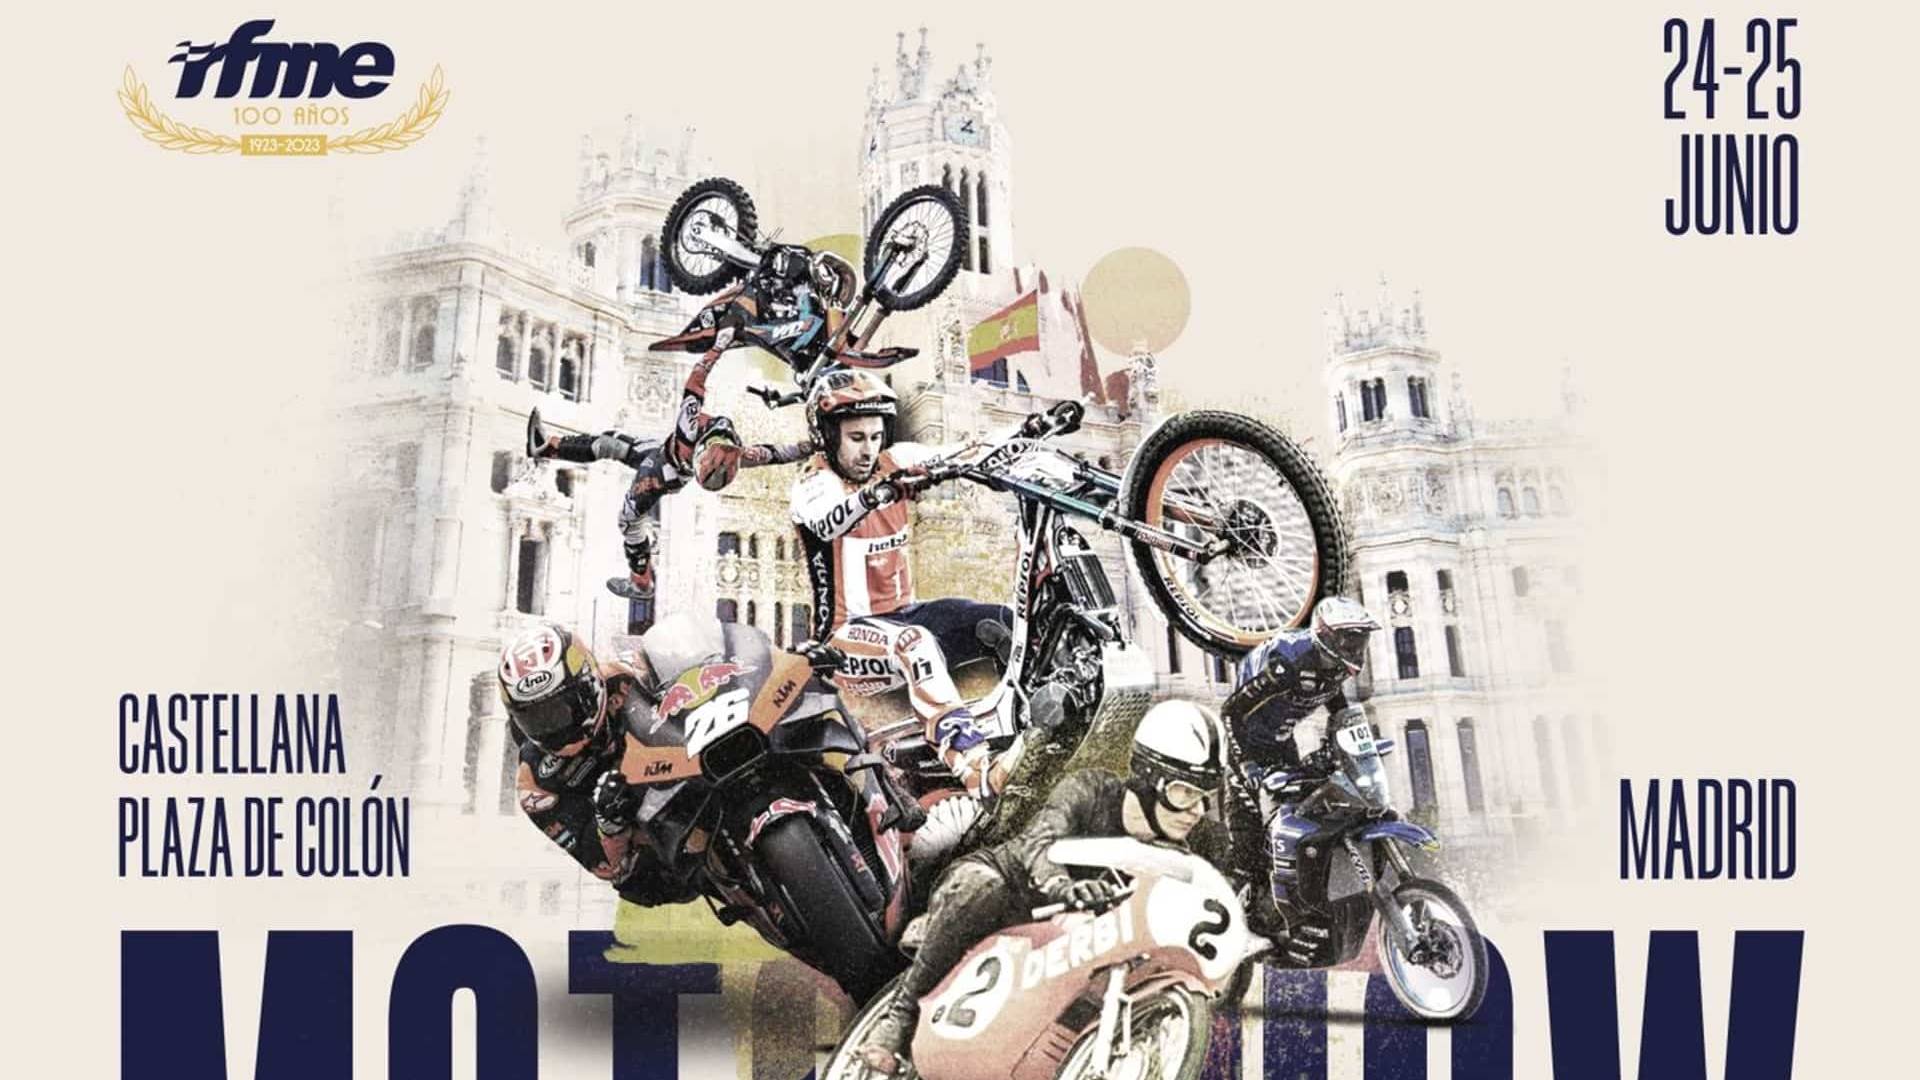 Madrid MotoShow